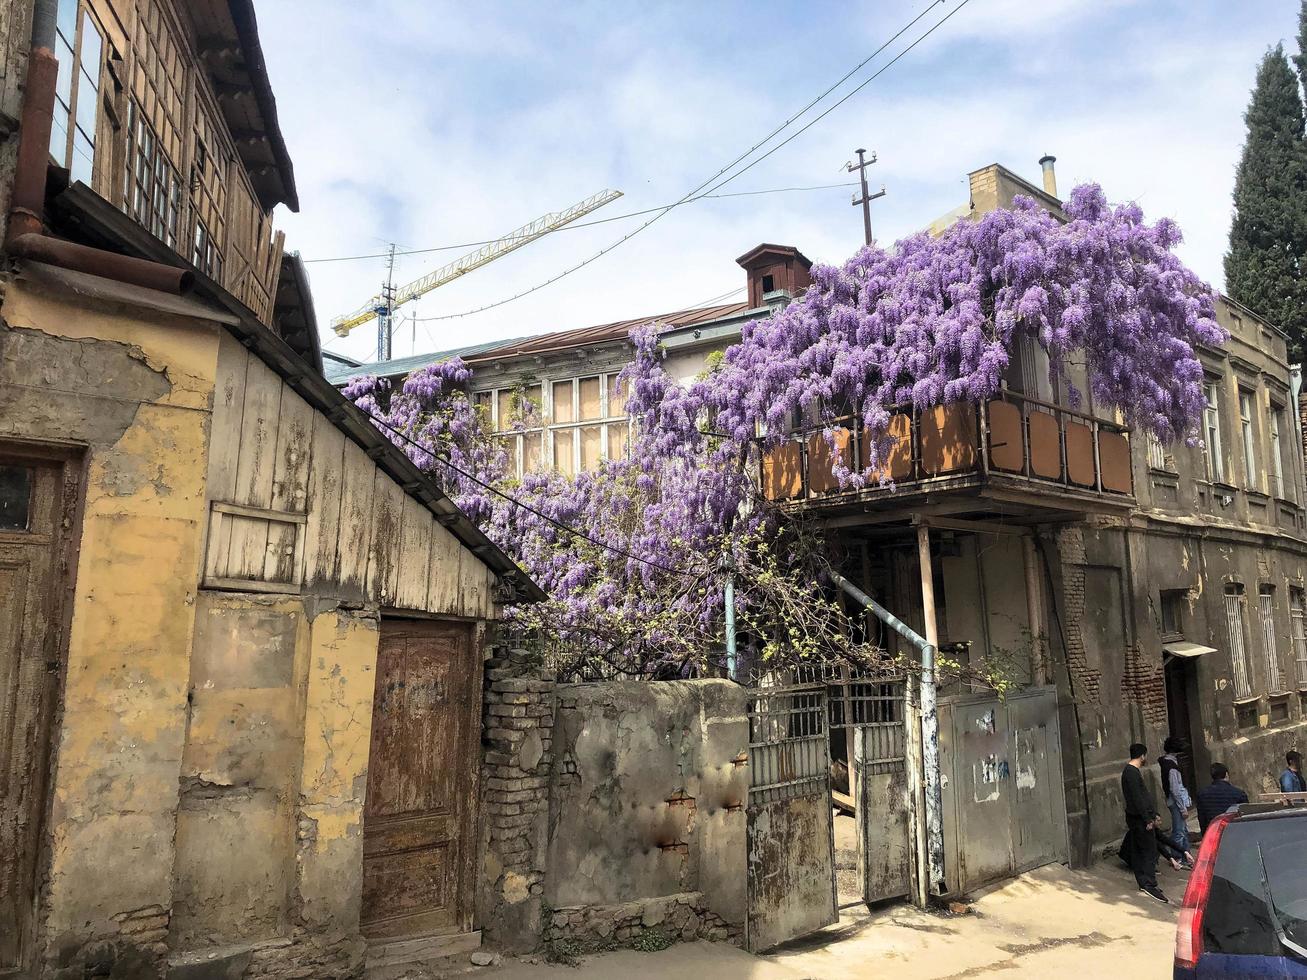 mooi oud bruin drie verdiepingen huis, sloppenwijken verstrengeld met Purper lila struiken in de oud stedelijk Oppervlakte foto